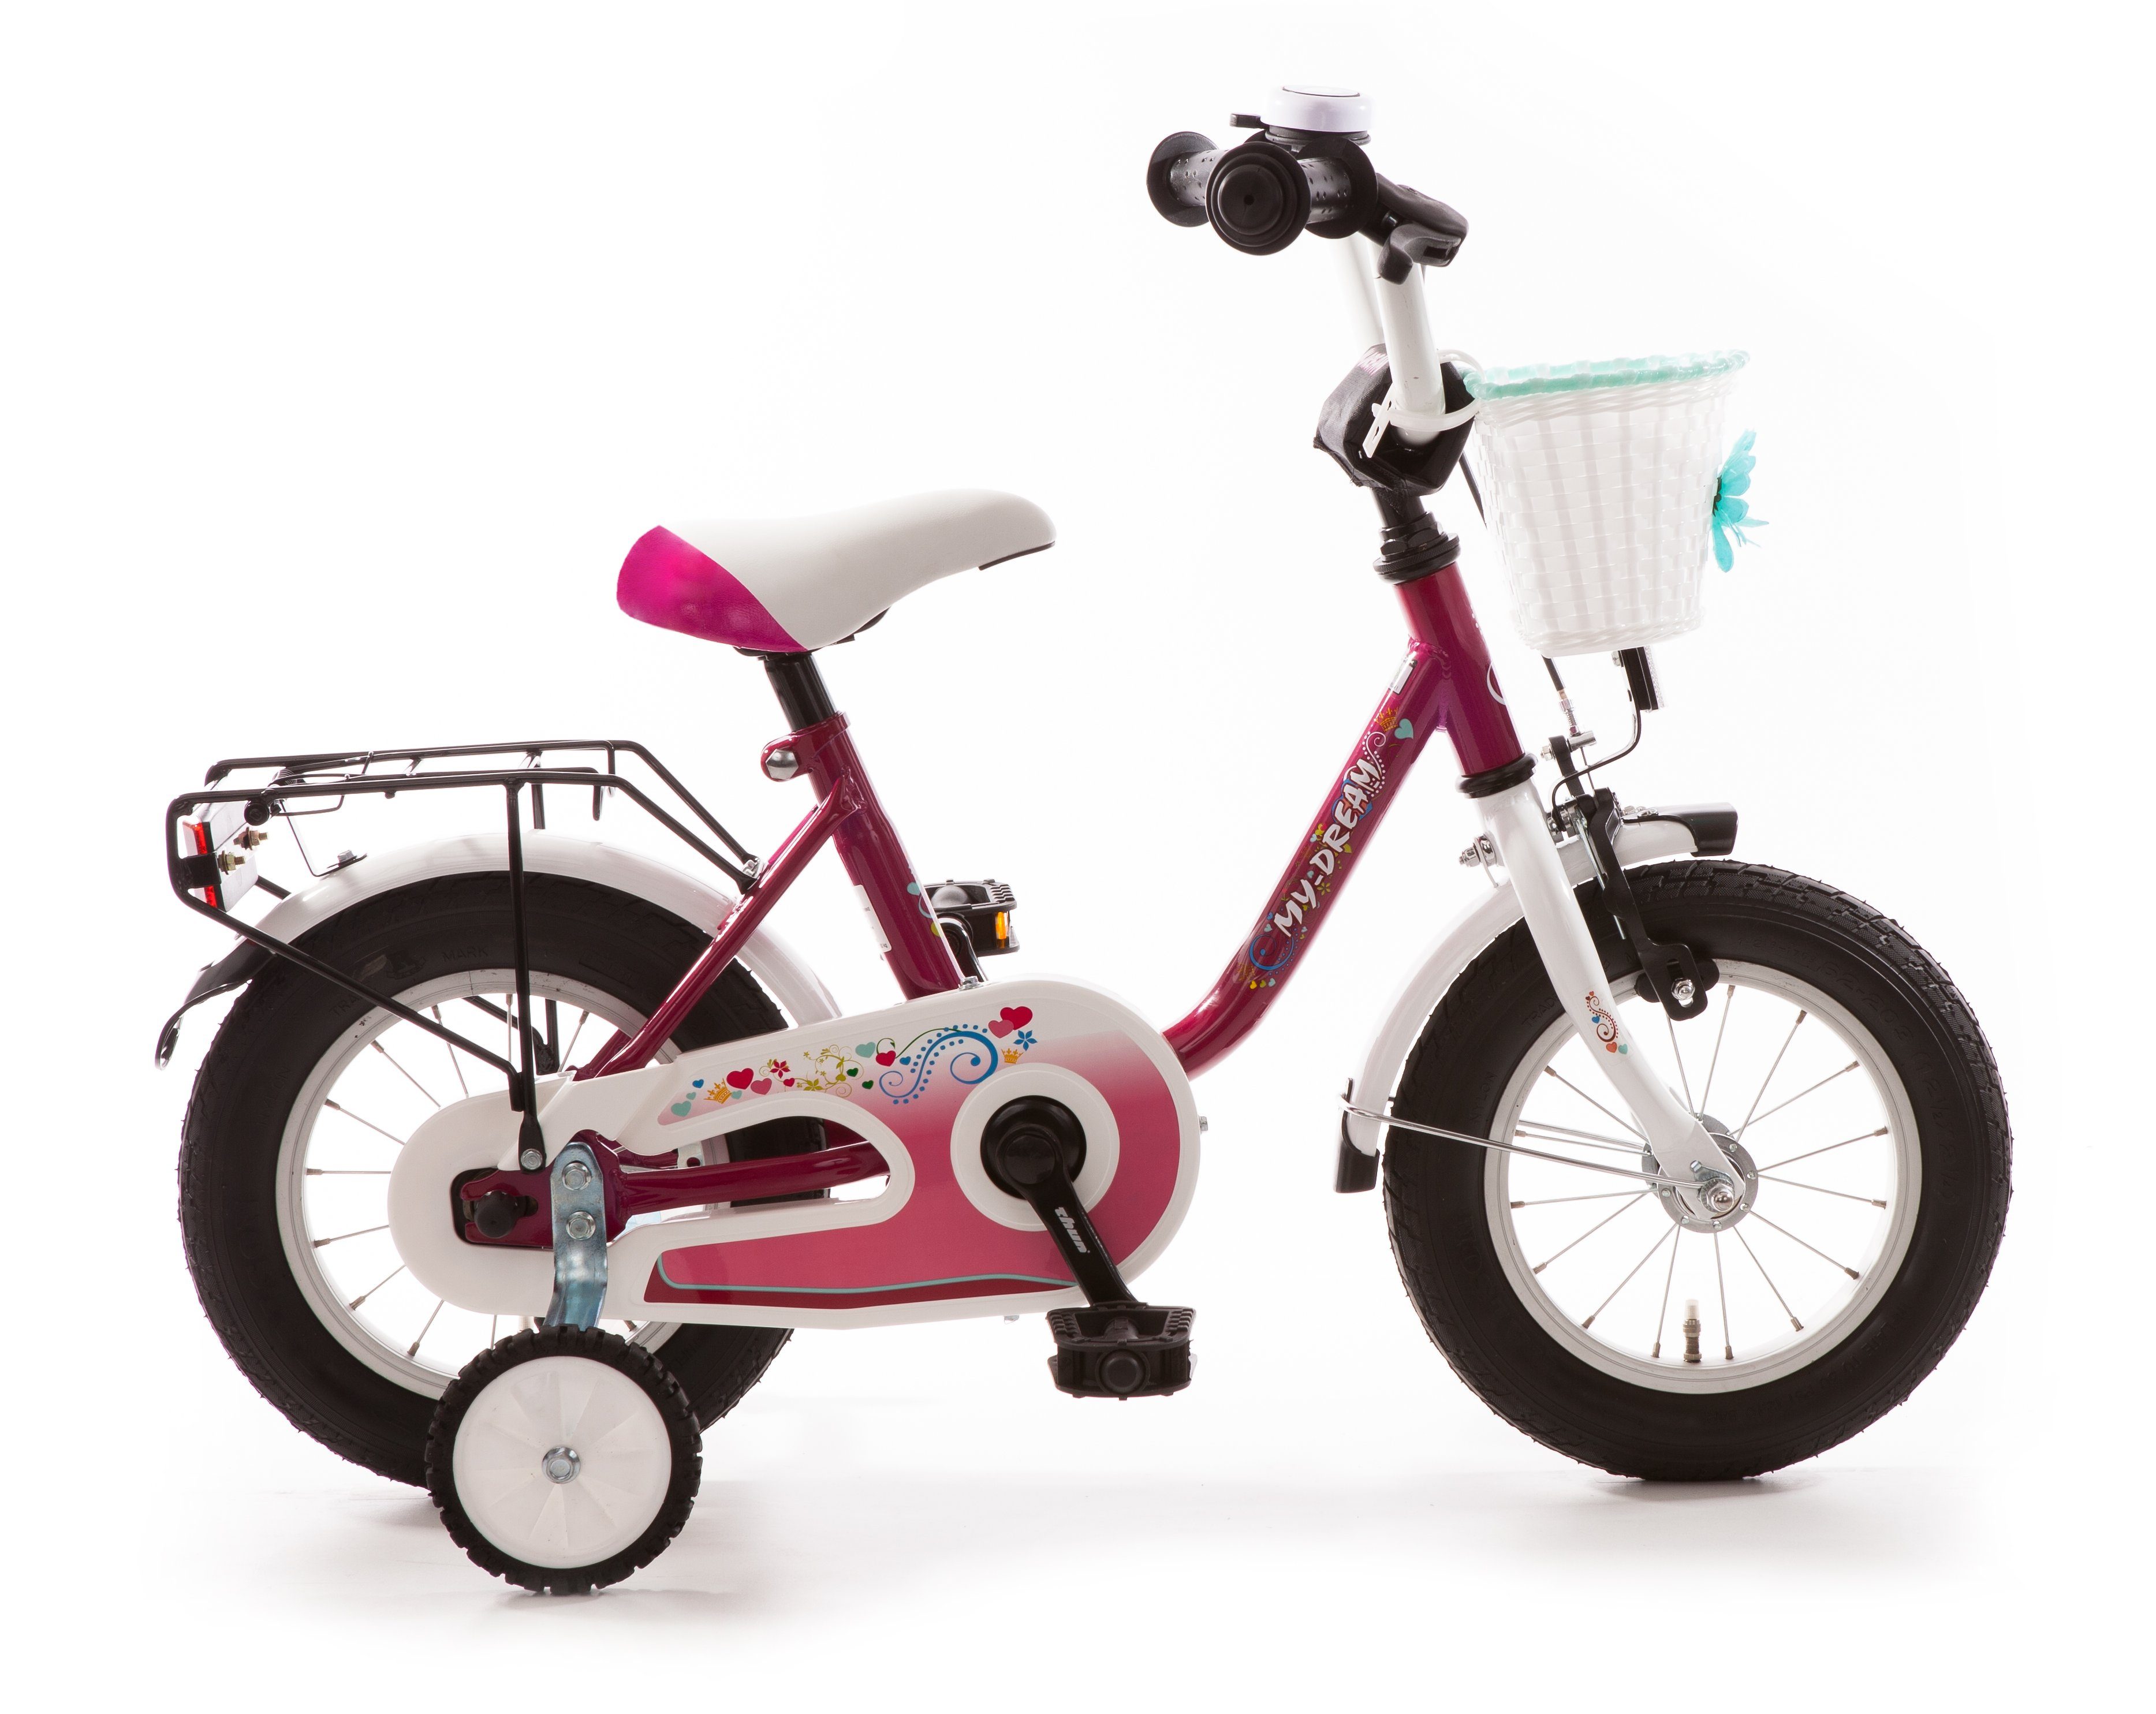 Bachtenkirch Kinderfahrrad My Dream 12 Zoll Fahrrad für Kinder ab 3 Jahre, Rücktrittbremse, Stützräder